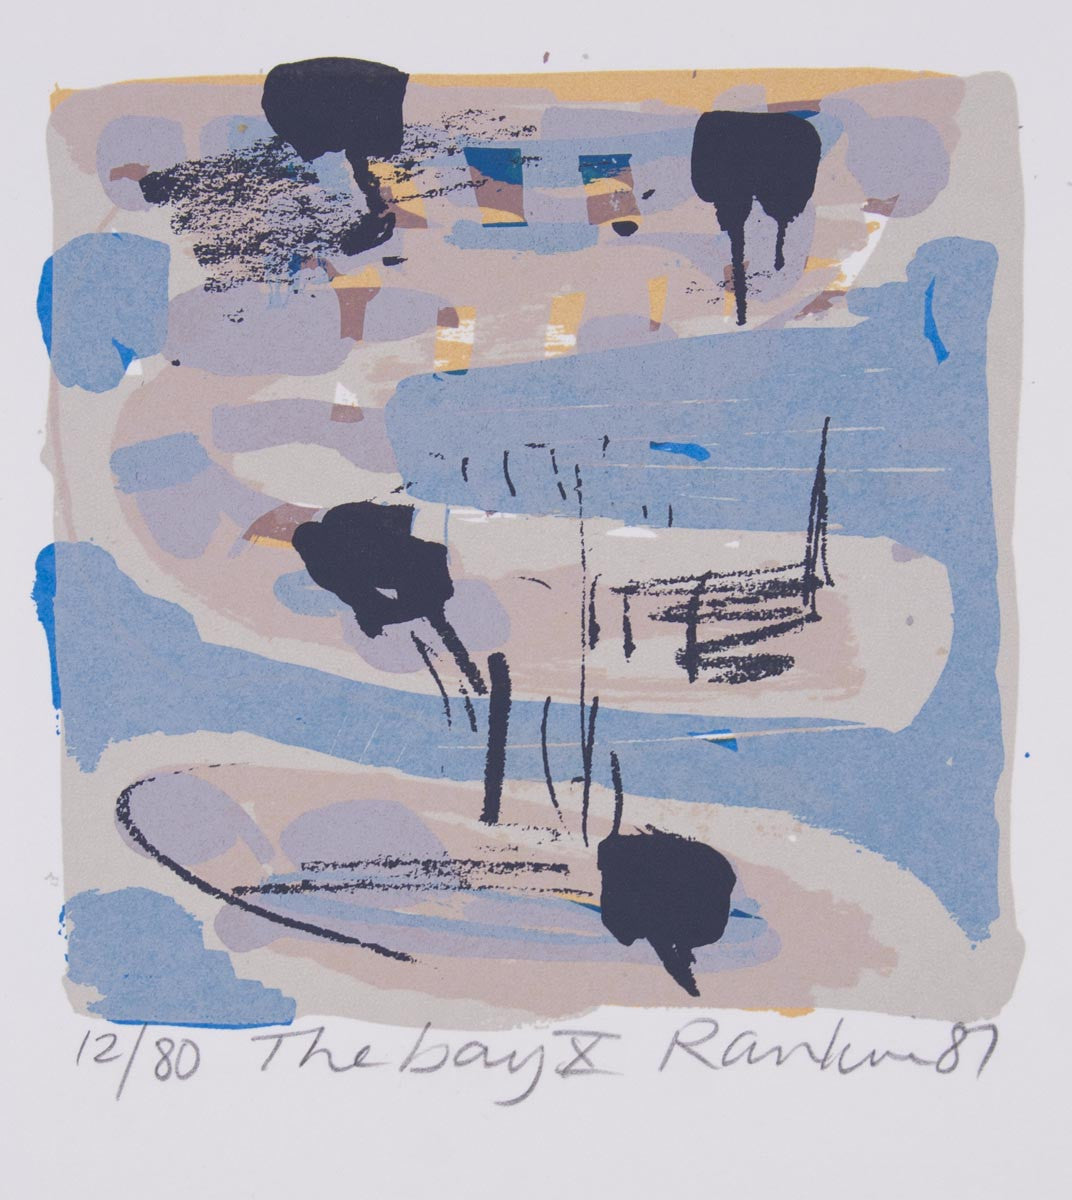 David Rankin 'The Bay X' - screenprint on paper